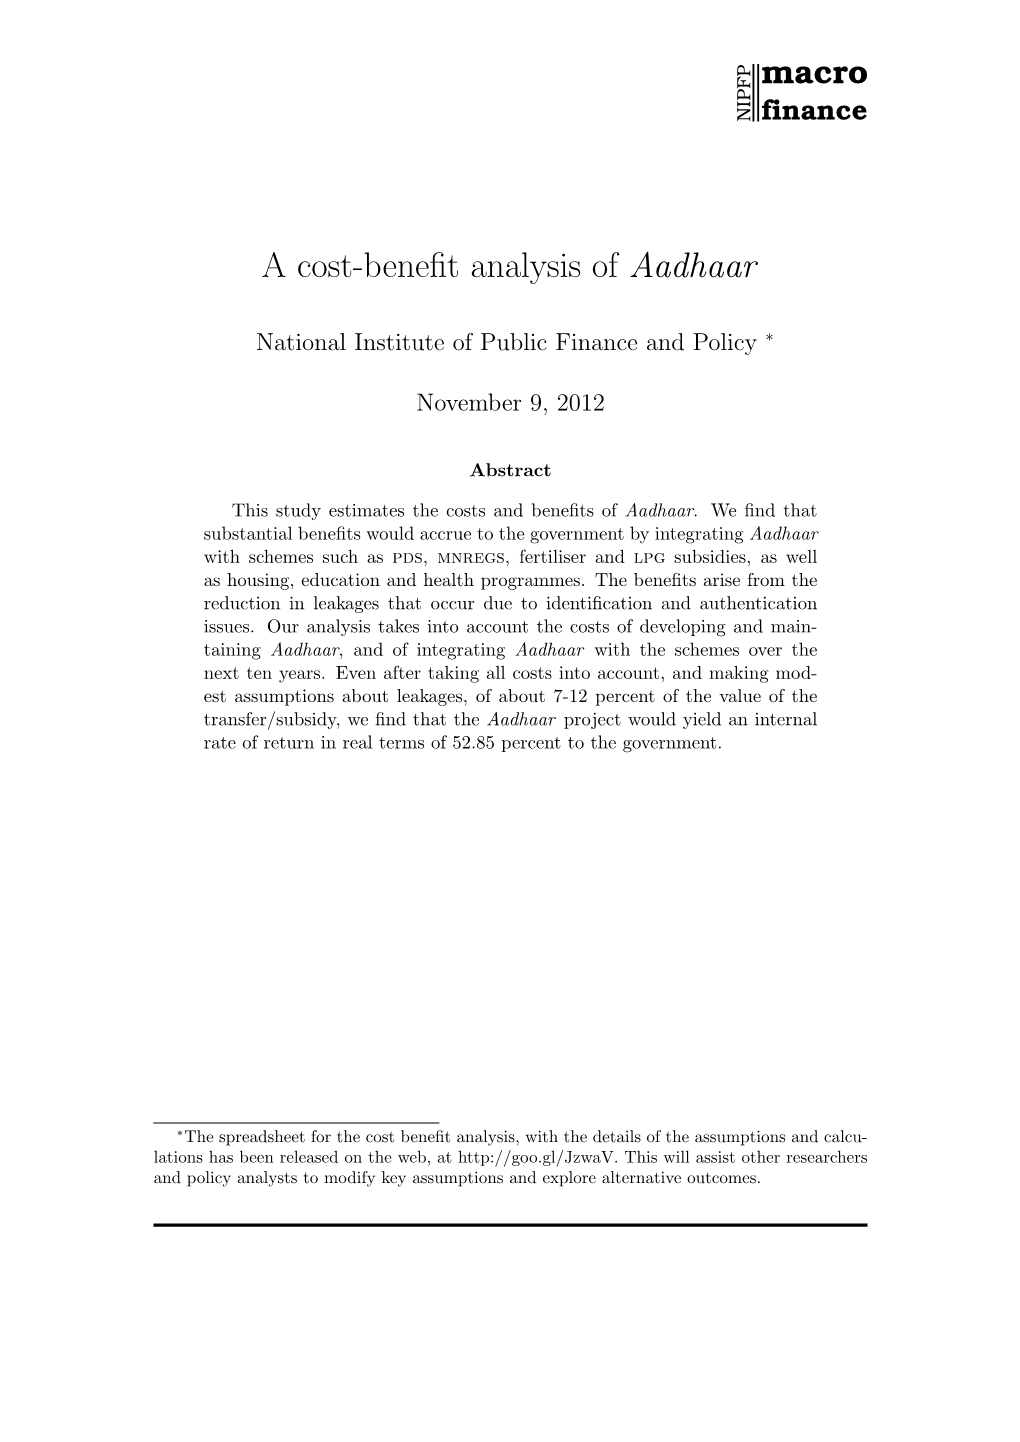 A Cost-Benefit Analysis of Aadhaar